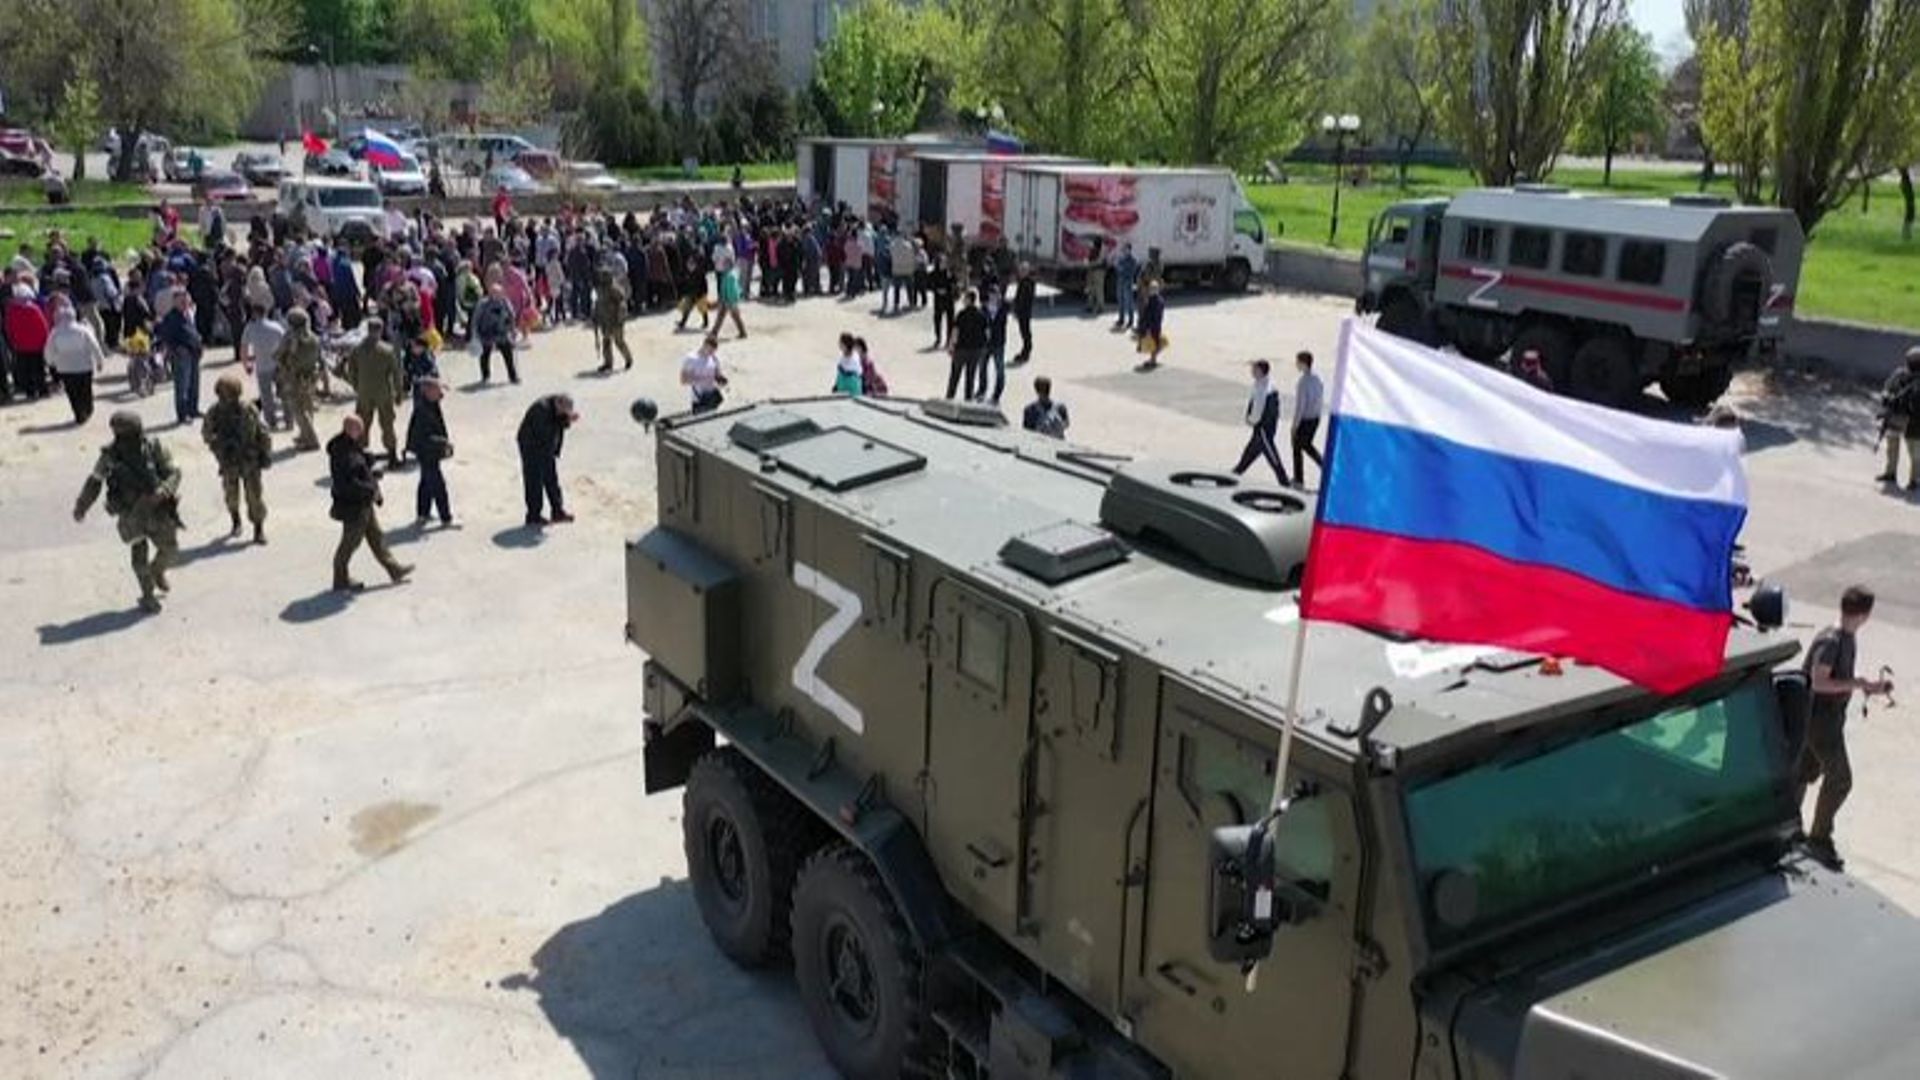 Les habitants de Berdiansk font la file pour recevoir l’aide humanitaire distribuée par les camions militaires russes.